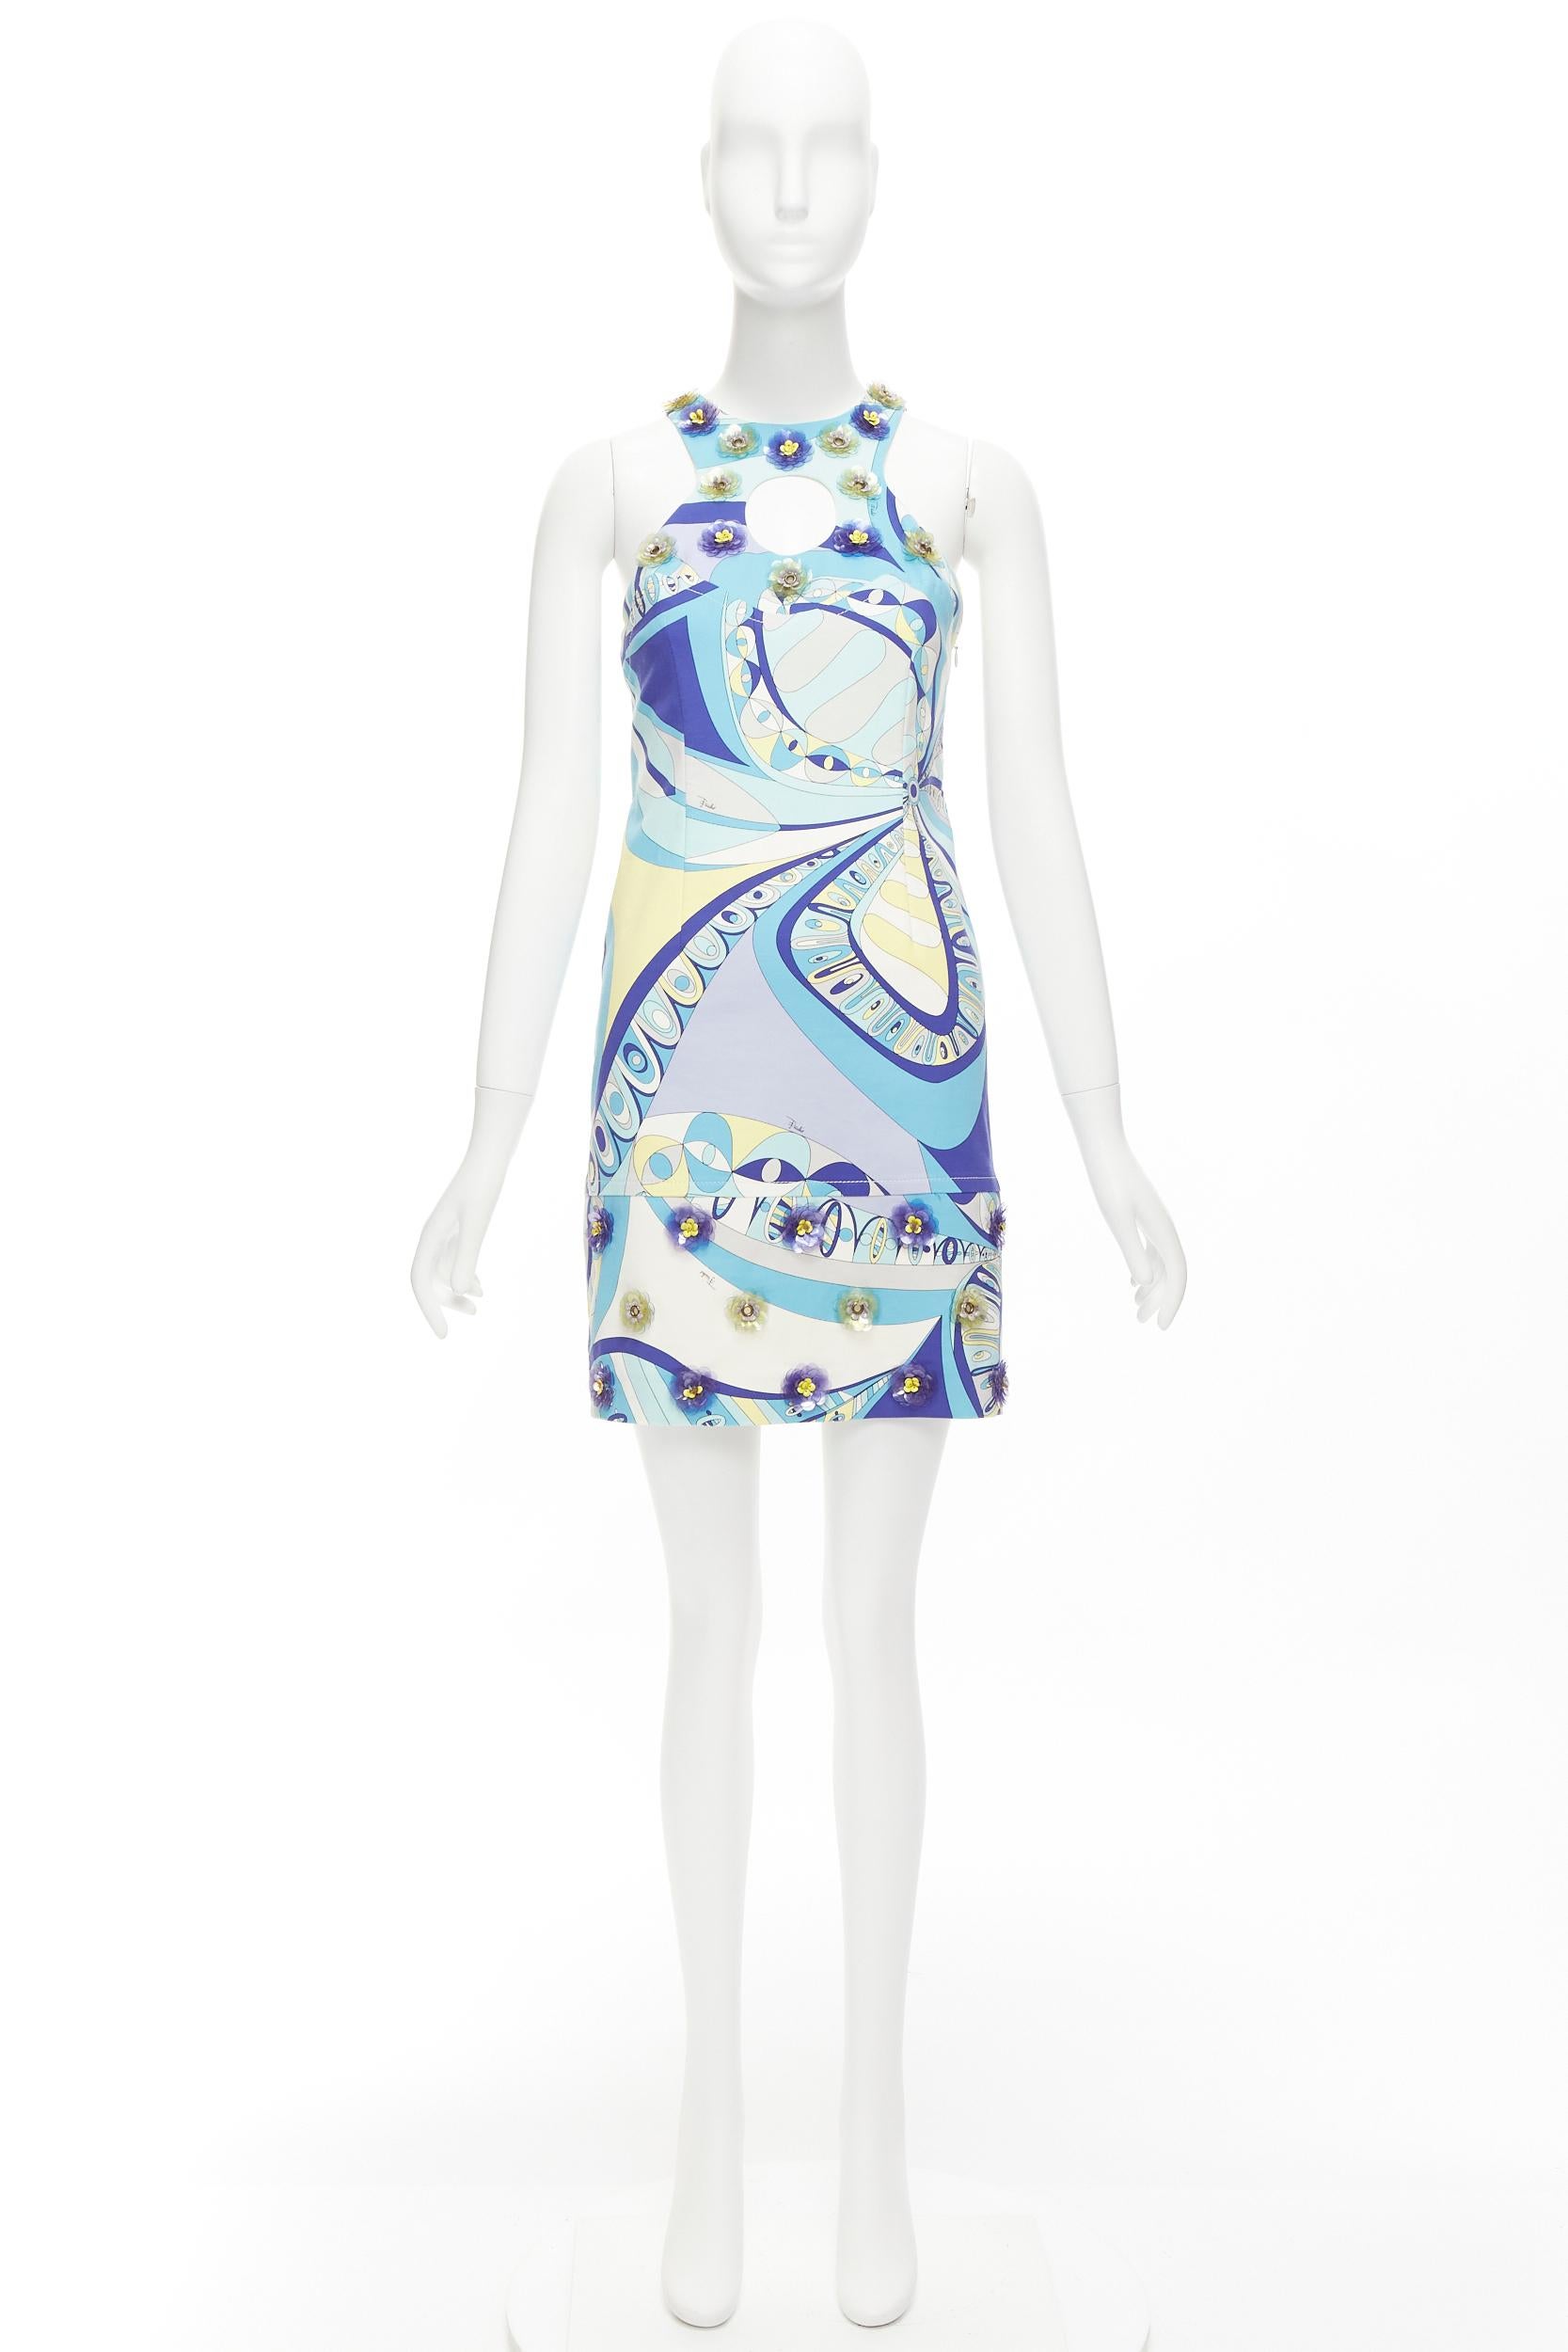 EMILIO PUCCI geometric floral print cut out flower applique halter mini dress For Sale 5